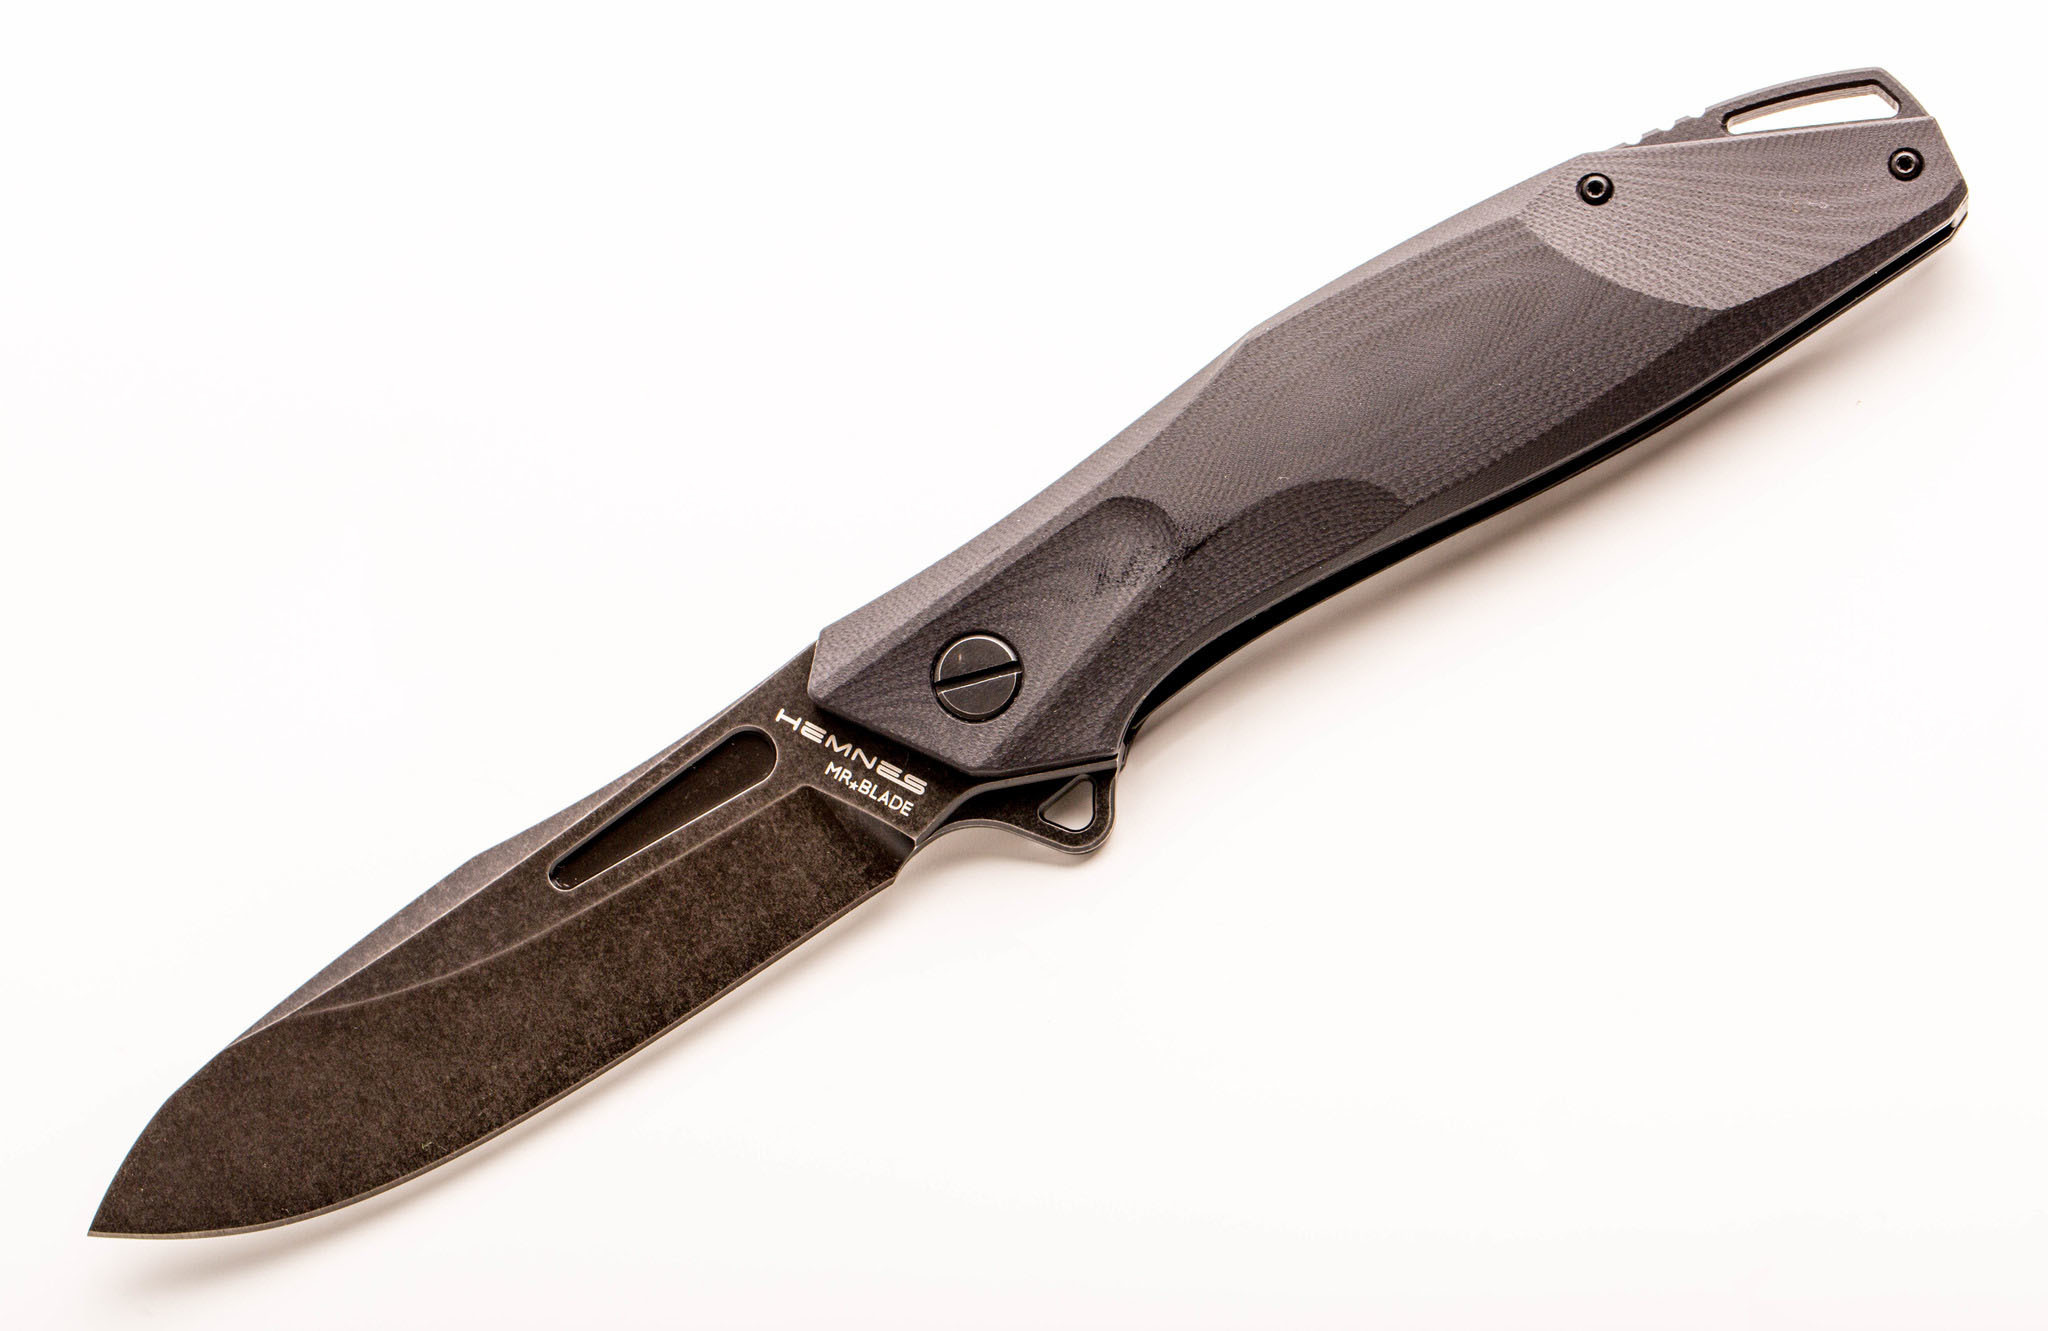 Складной нож Hemnes, сталь D2, Mr.Blade полуавтоматический складной нож ontario rat 1a assisted   blade desert tan g 10 handle